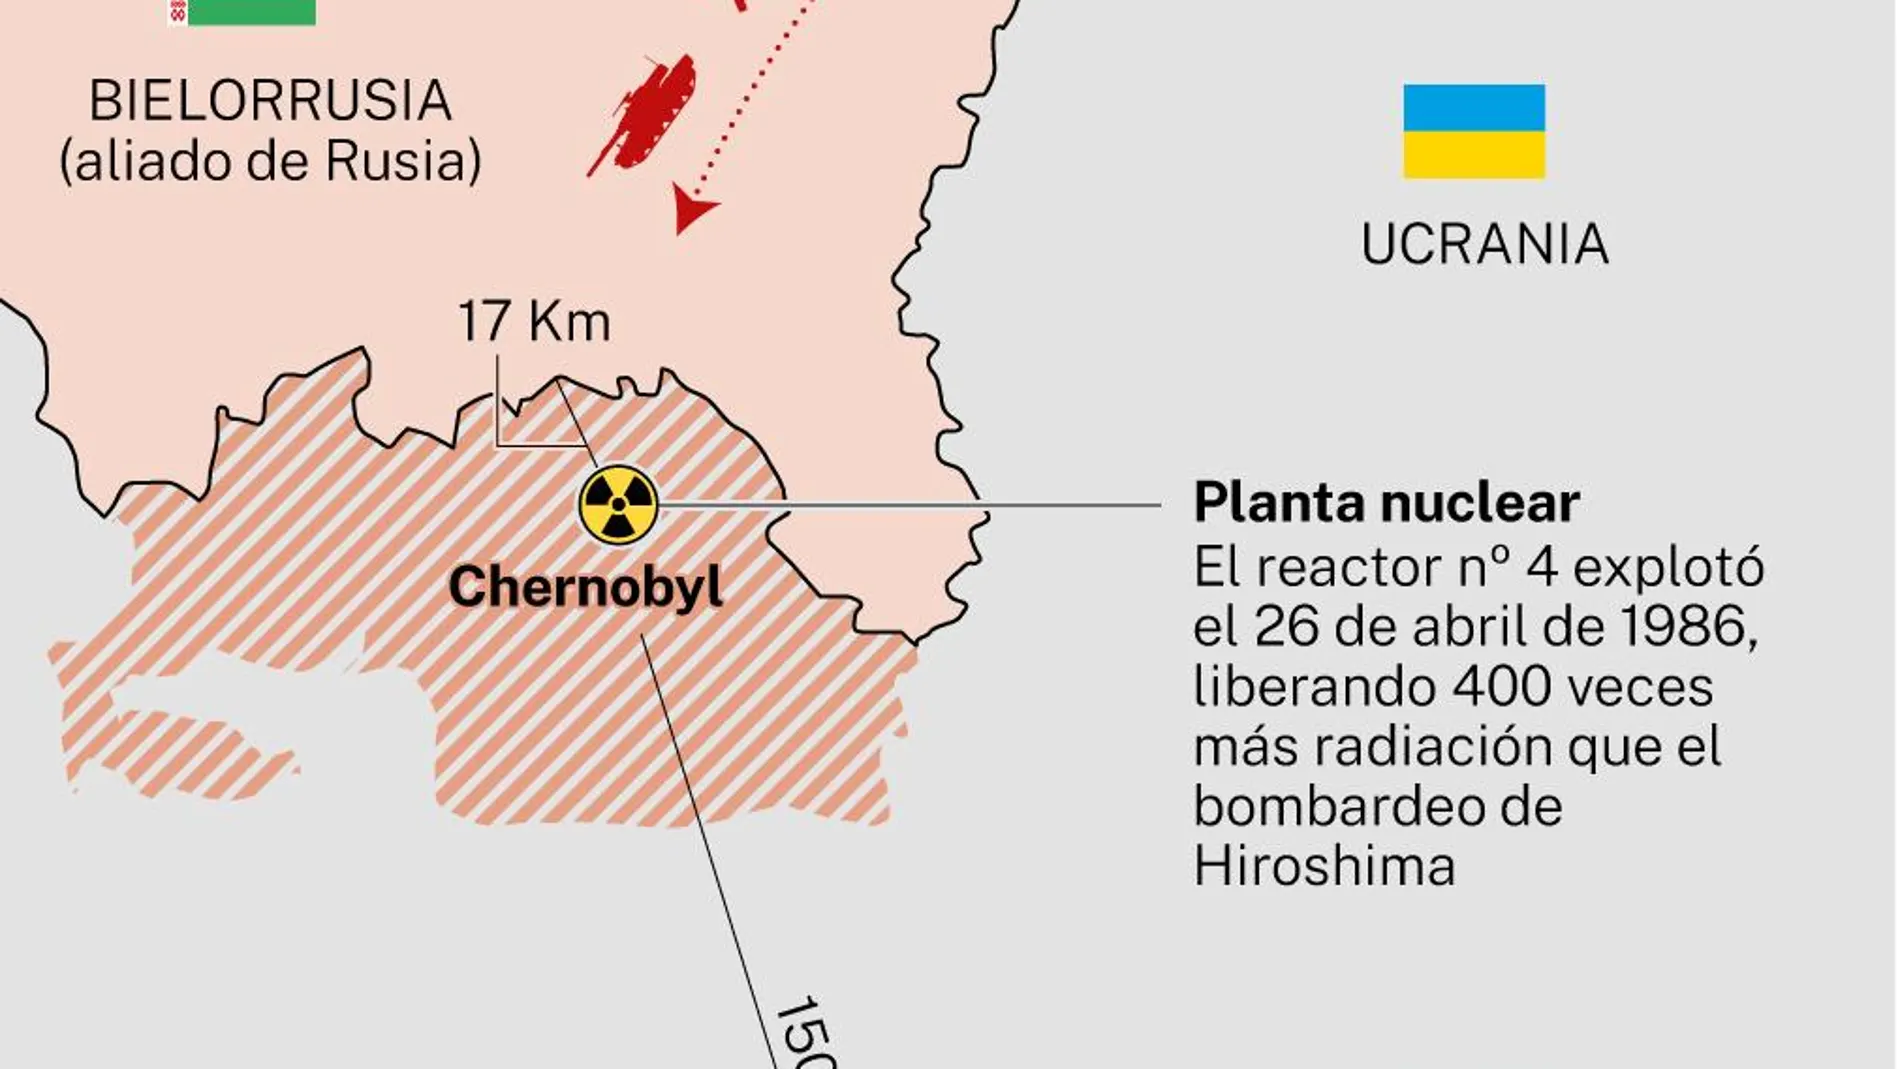 Chernóbyl representa la ruta directa más corta desde la frontera bielorrusa hasta Kiev. Se trata de una zona pantanosa y con densos bosques, con una distancia de apenas 17 kilómetros entre el territorio y la frontera con Bielorrusia.